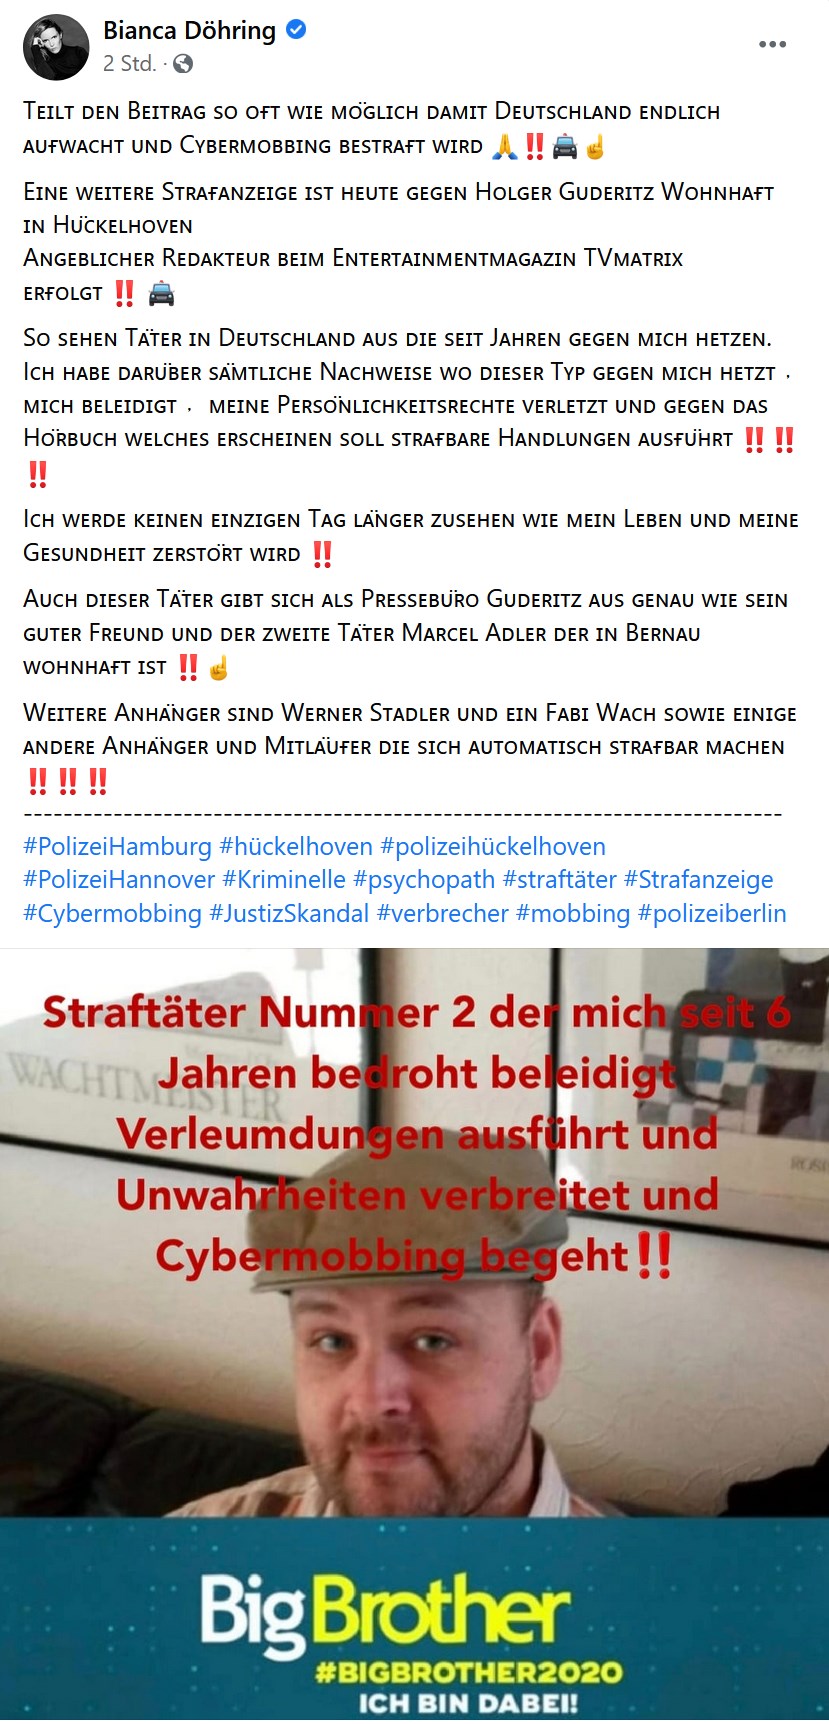 Bianca Döhring beschuldigt angebliche Täter ohne Beweise - Justiz Polizei Anzeige Strafanzeige Verbrecher Staatsanwaltschaft Cybermobbing Buch Skandel